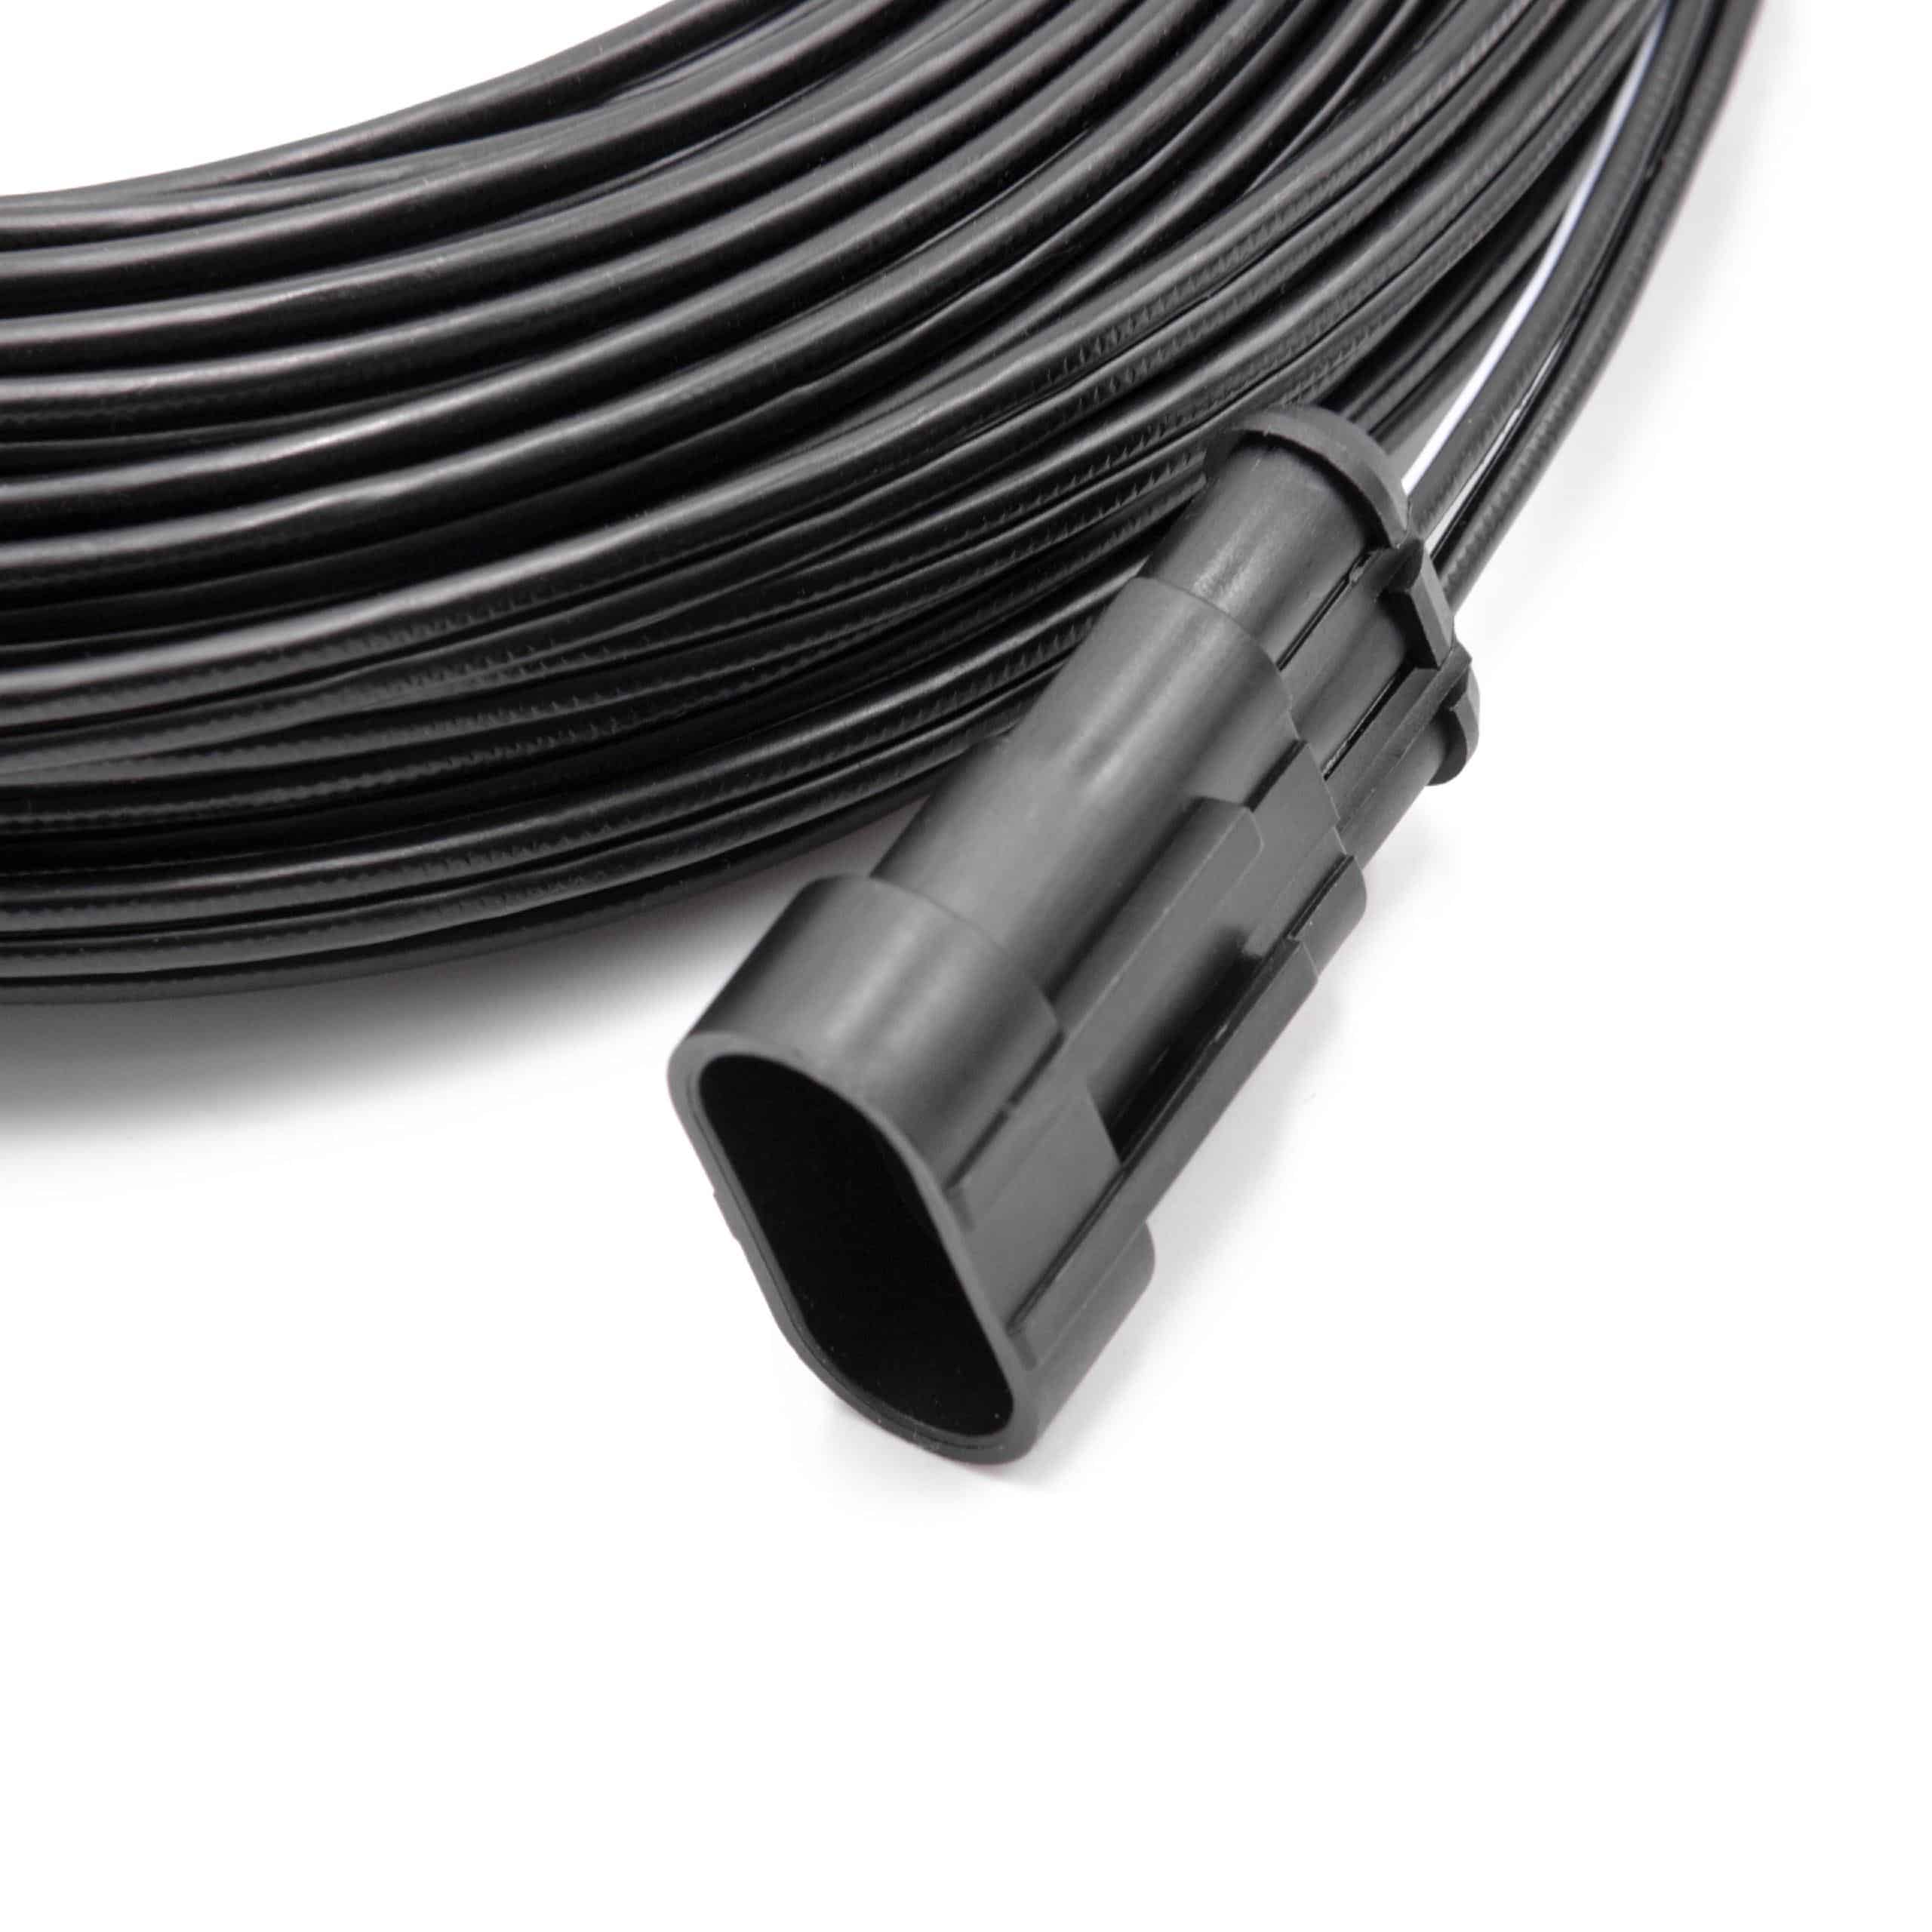 Cable de bajo voltaje reemplaza Gardena 00057-98.251.01 - cable trafo, 20 m